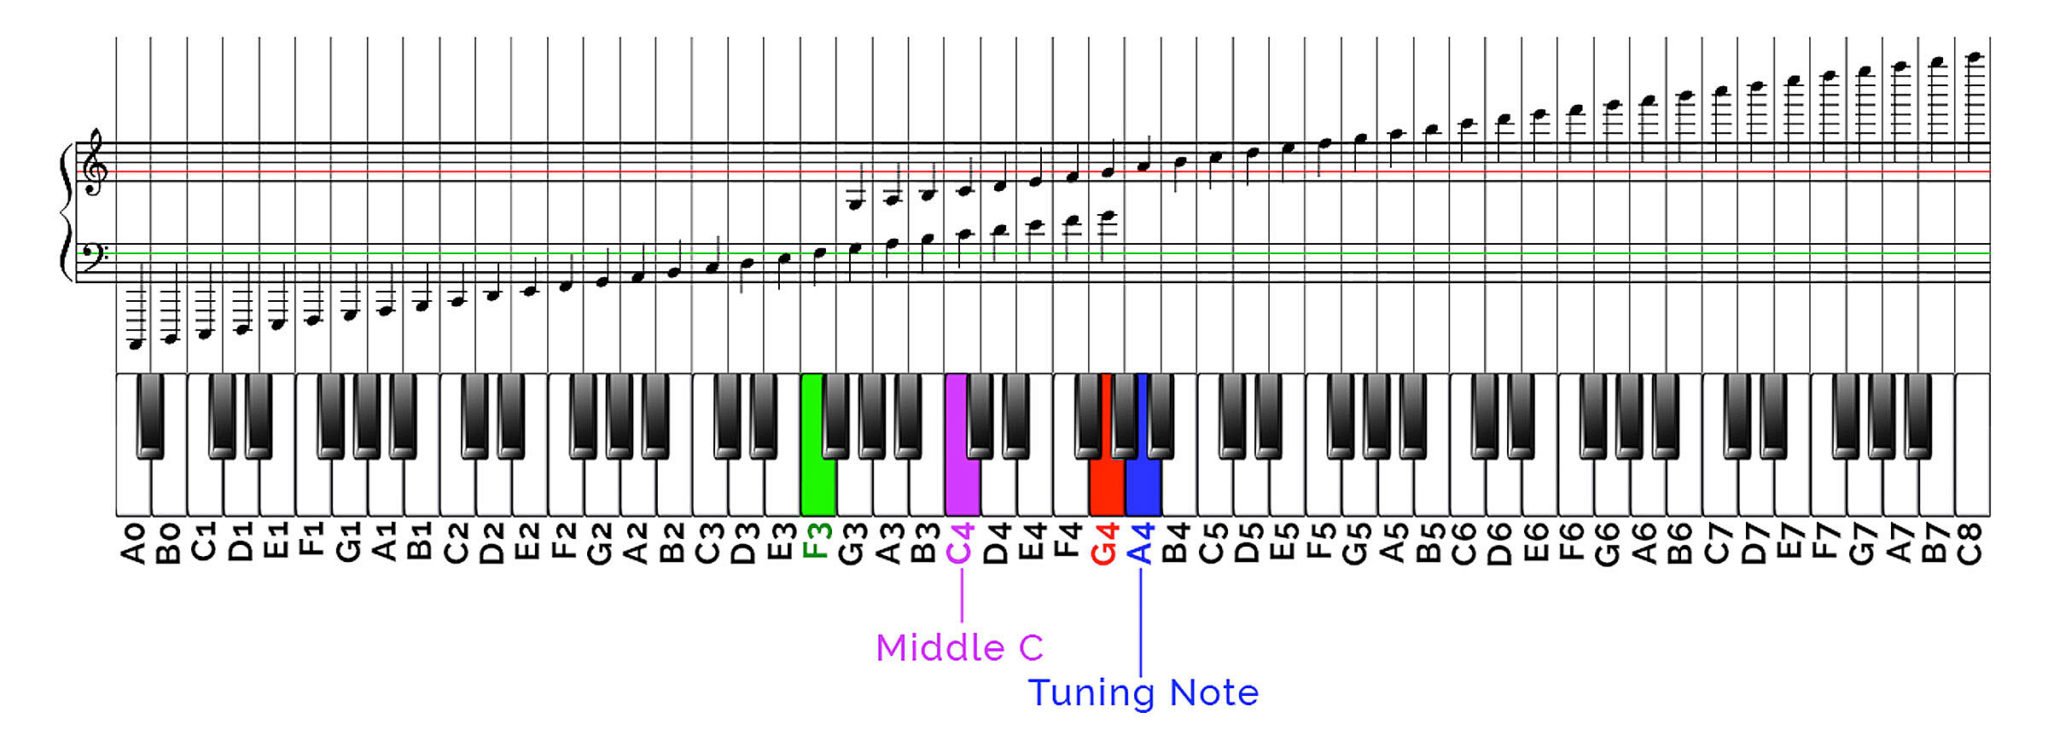 2 3 октавы. Схема расположения нот на синтезаторе 61 клавиша. Нота g 6 пианино. Расположение октав на синтезаторе 61 клавиша. Пианино Нота Piano e6.